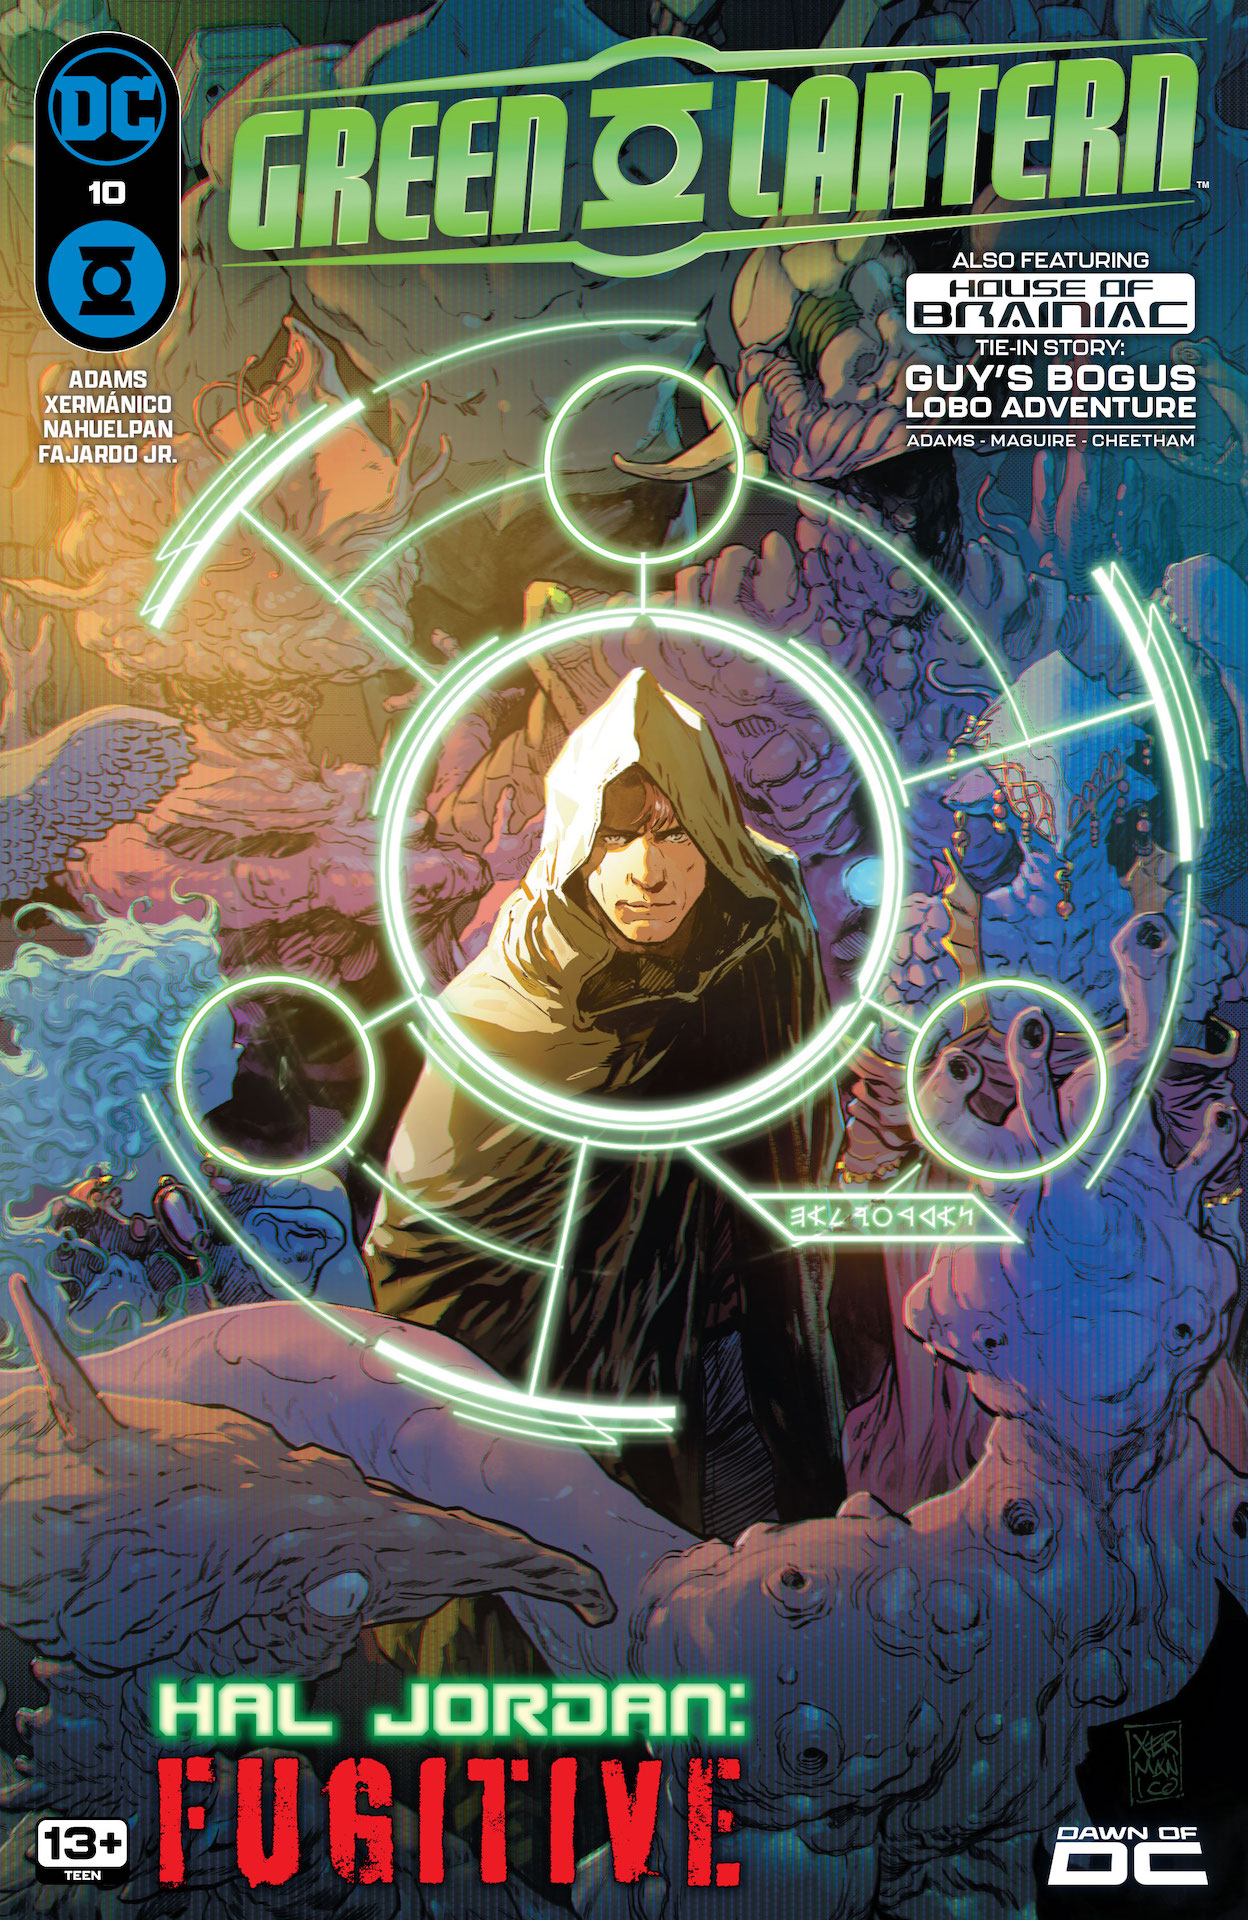 DC Preview: Green Lantern #10